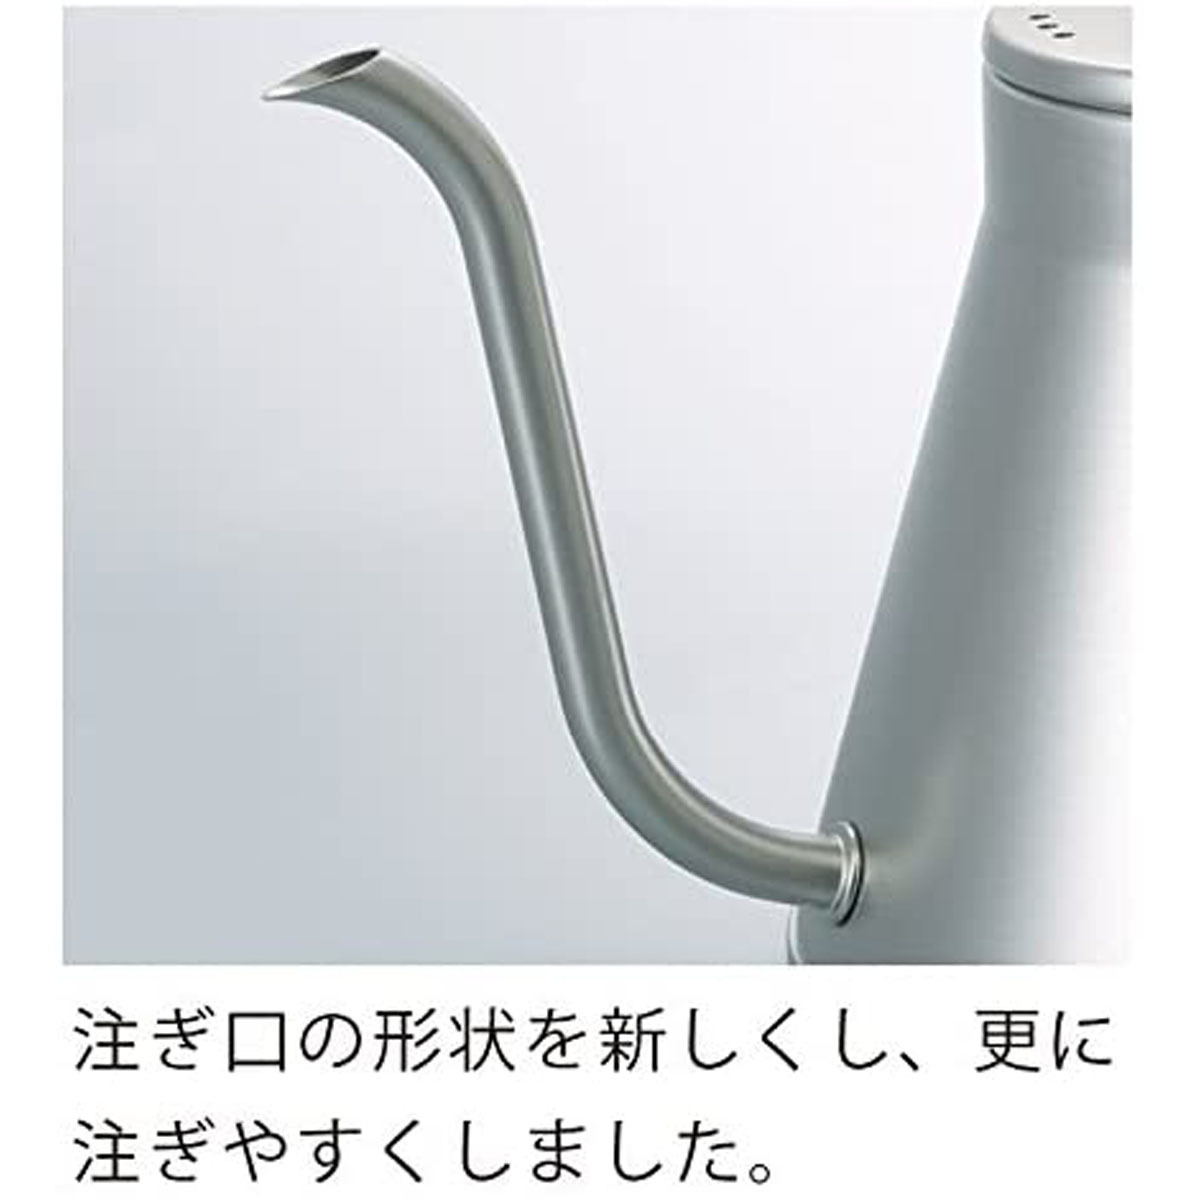 日本製ドリップケトル コーヒーケトル ステンレス 蓋付き ガス・IH対応 シンプル 800ml シルバー 注ぎやすい口形状・ハンドル形状_画像4